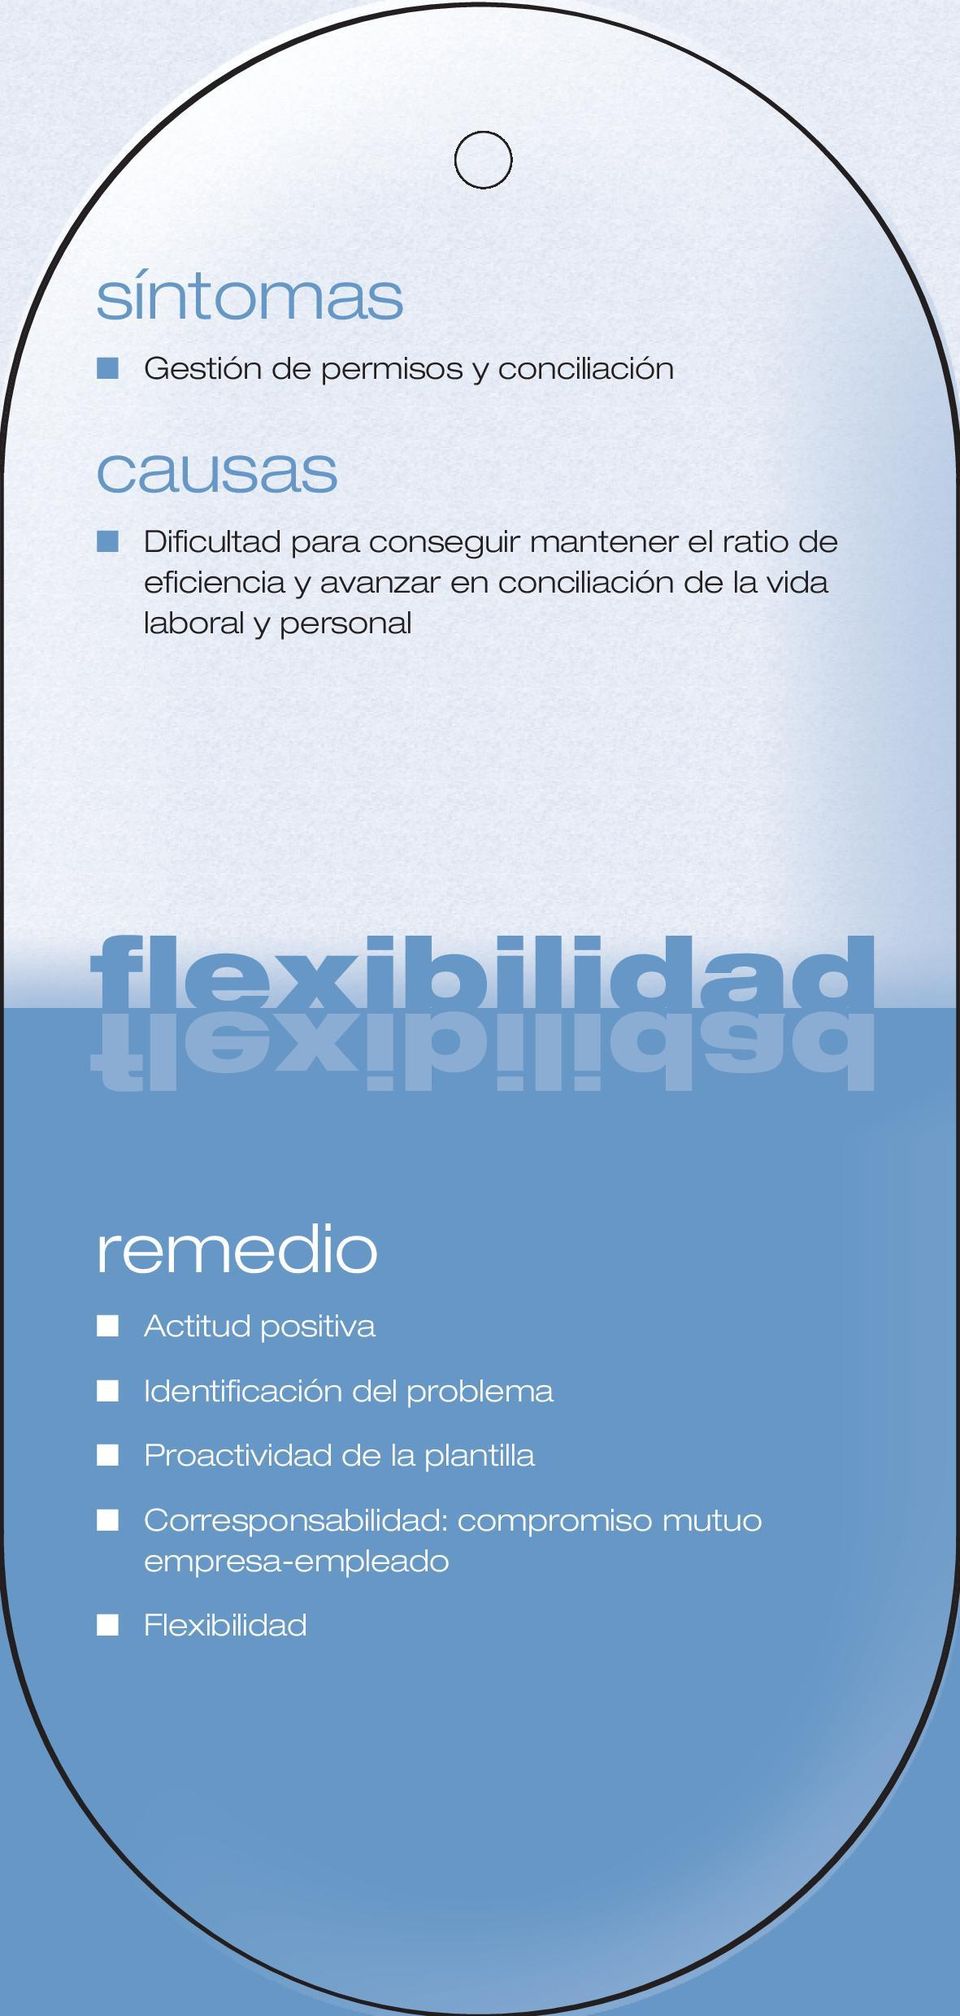 personal flexibilidad flexibilidad remedio Actitud positiva Identificación del